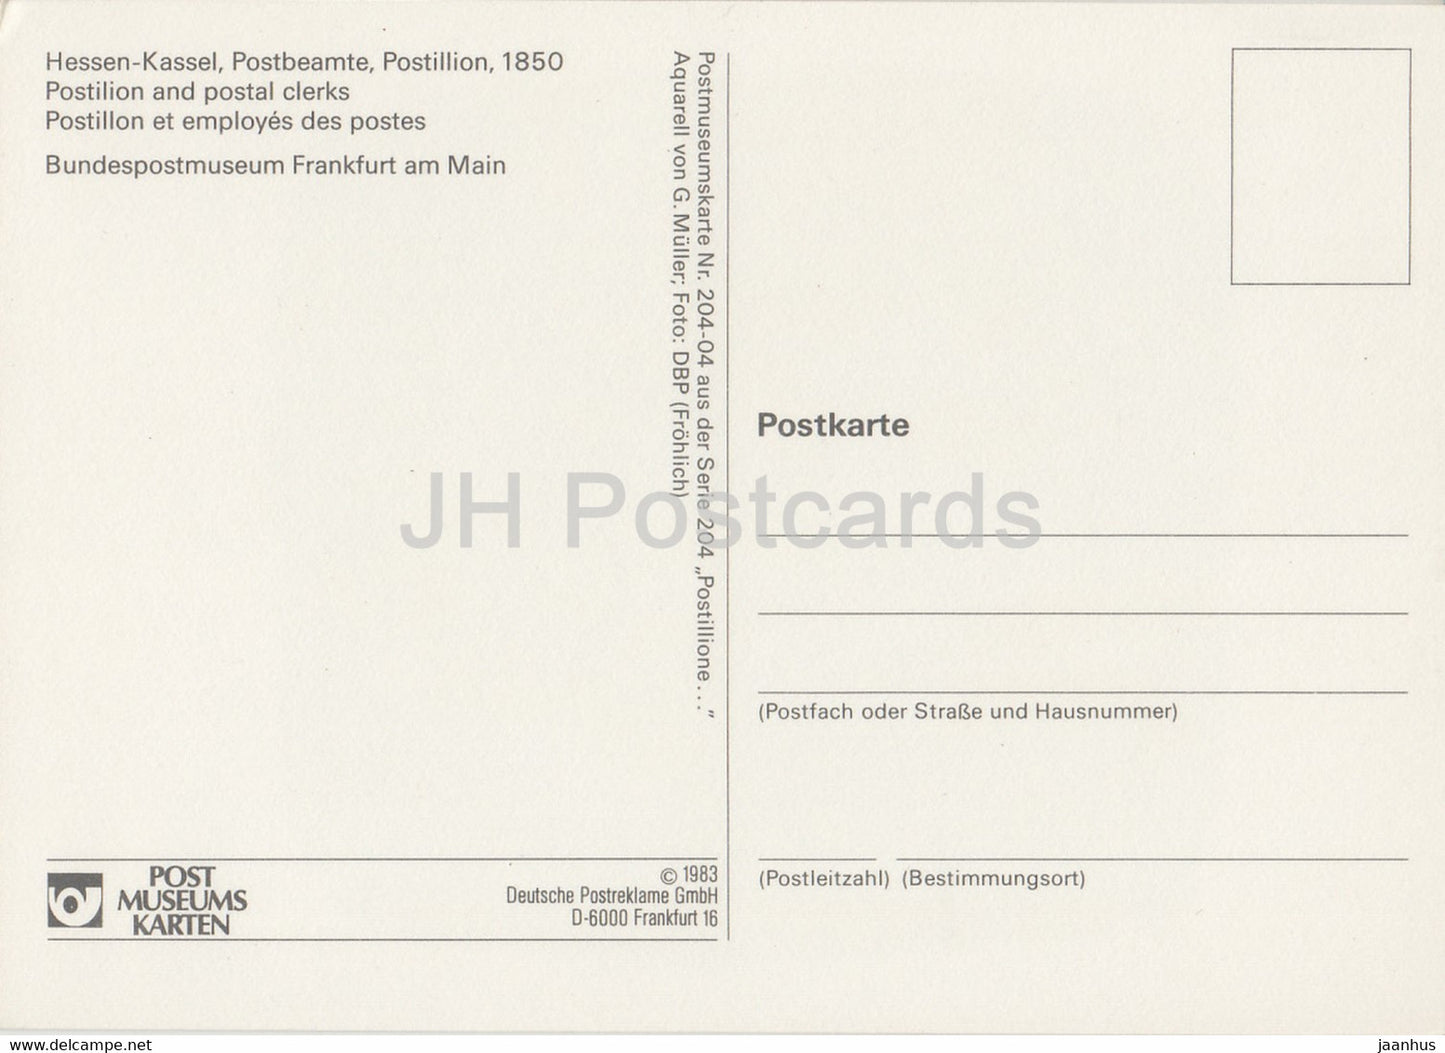 Hessen Kassel - Postbeamte - Postmänner - Postdienst - 1983 - Deutschland - unbenutzt